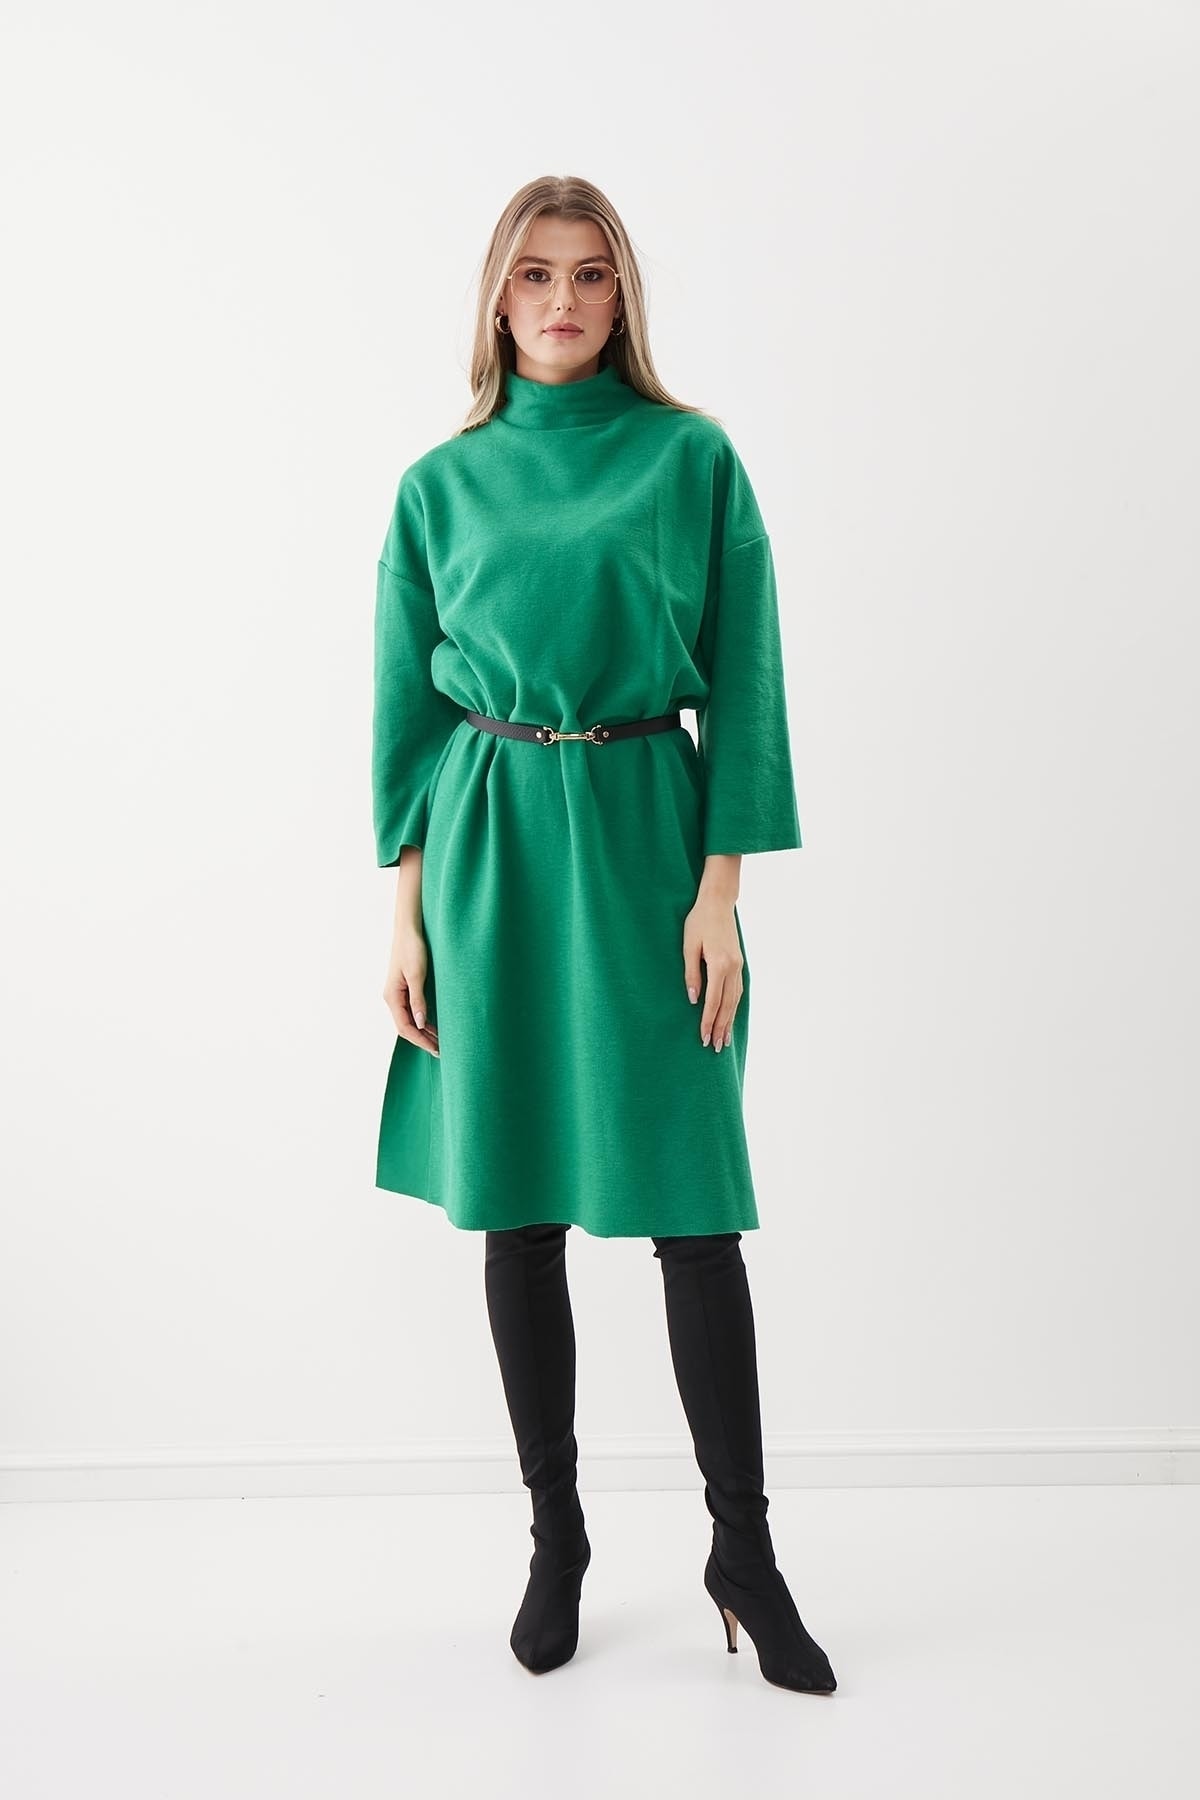 Vitrin Kleid Grün Strickkleid Fast ausverkauft UN7753